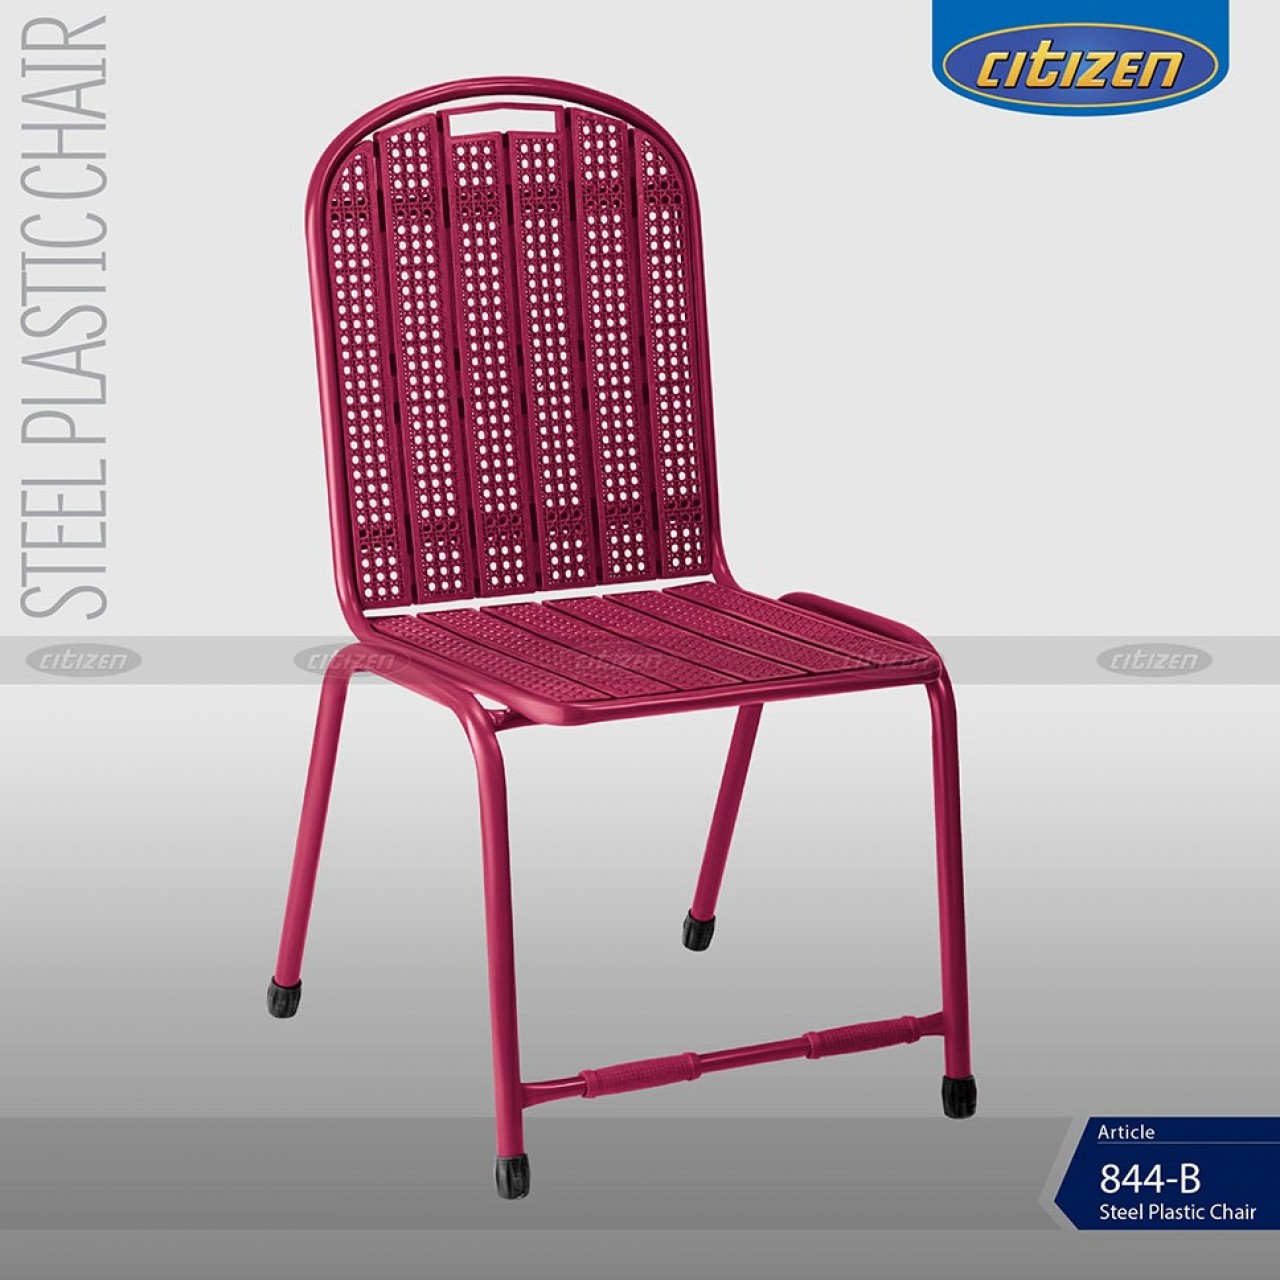 Citizen 844-B Steel & Plastic Chair - Indoor & Outdoor Home Furniture